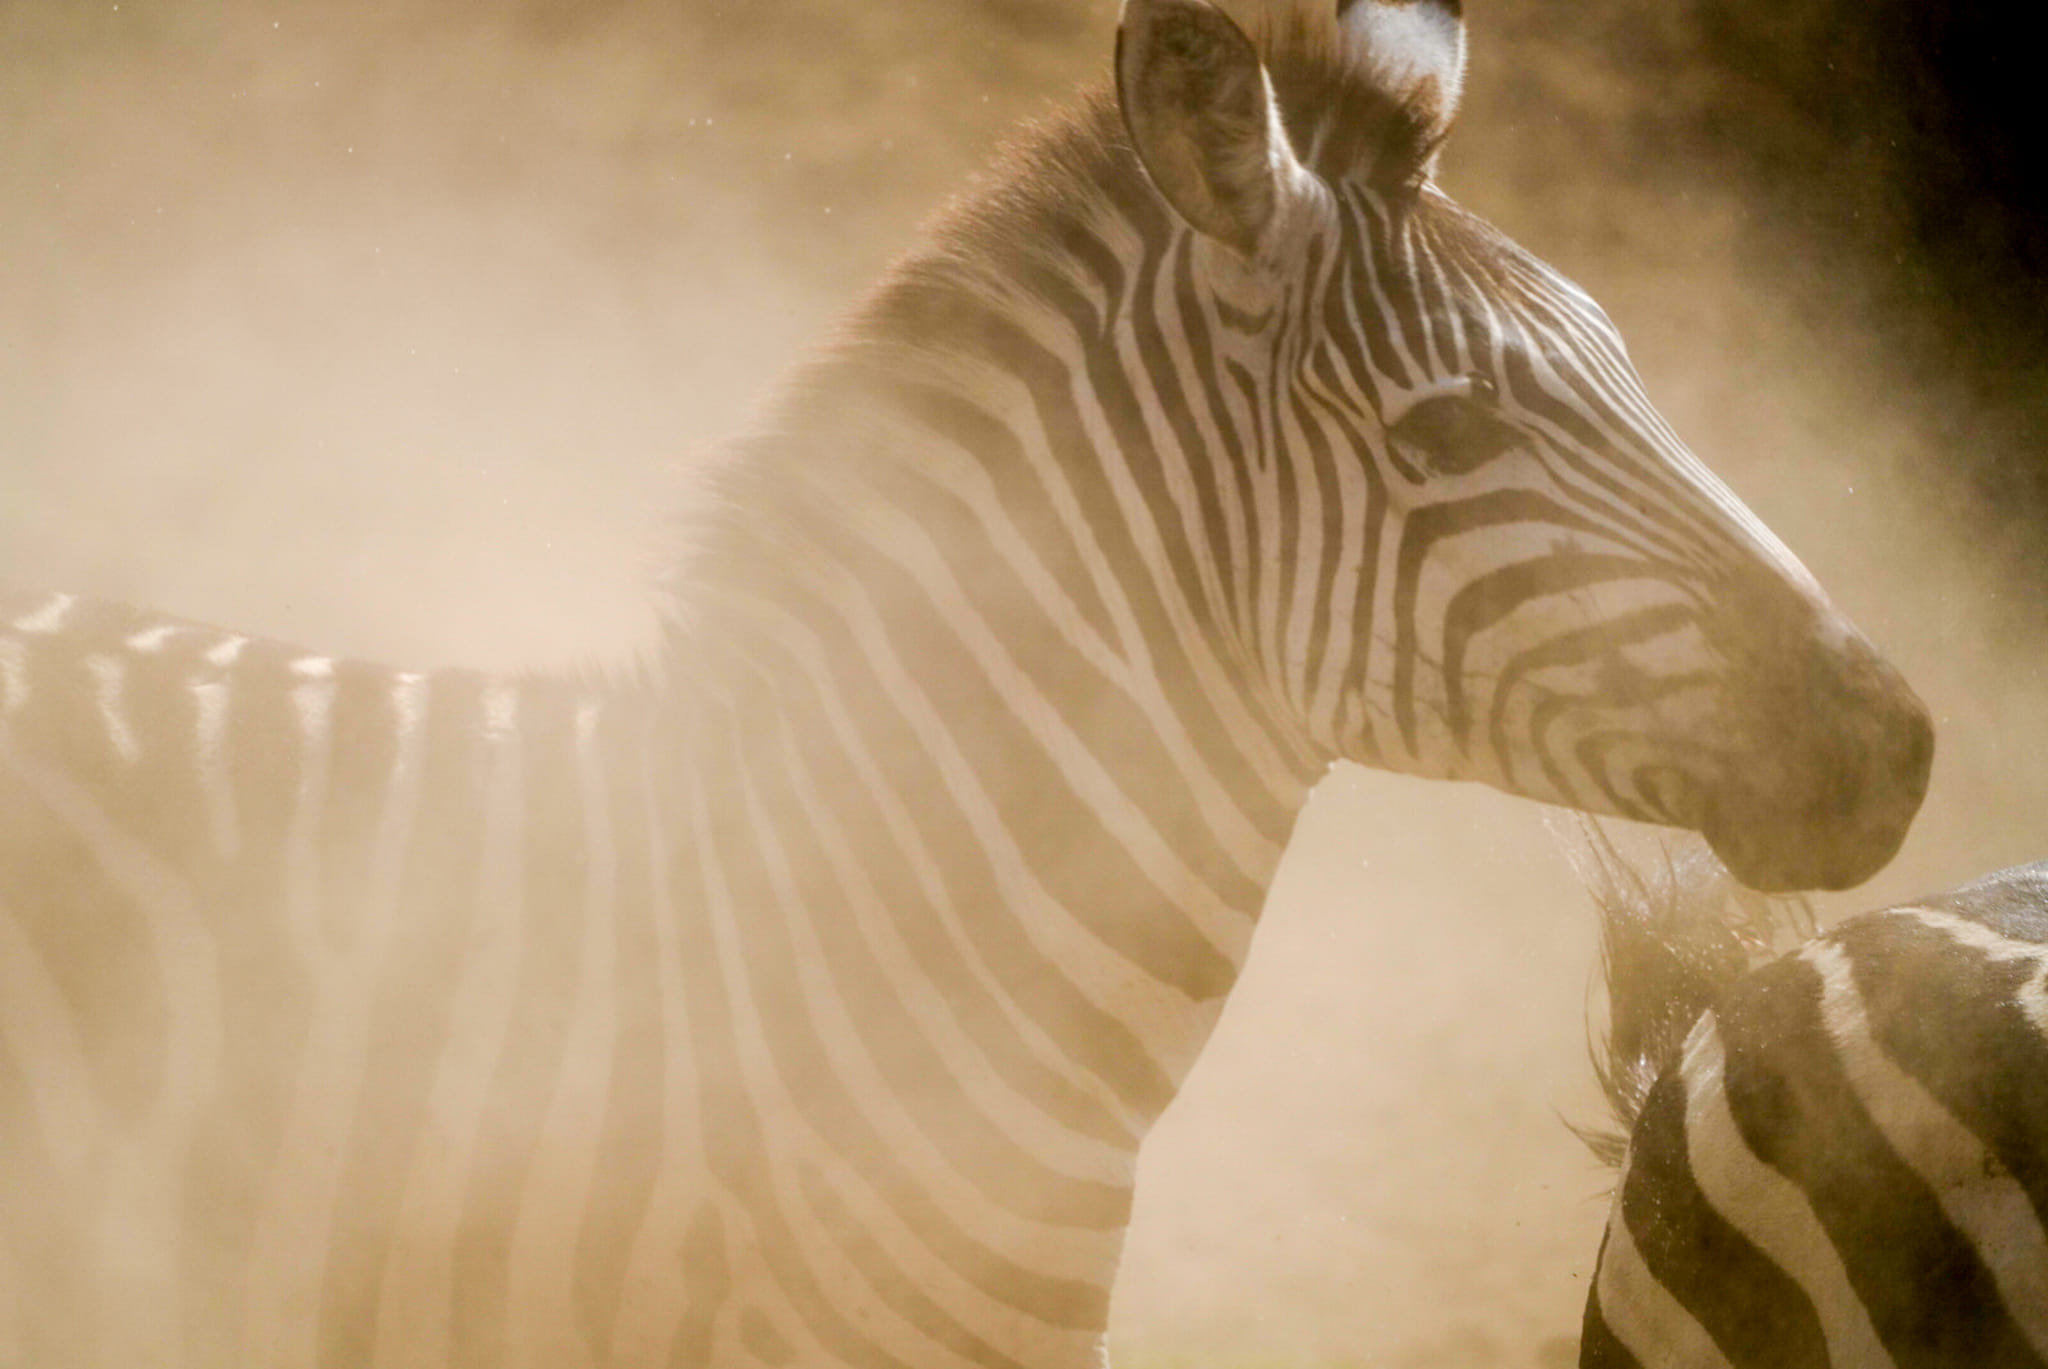 Die Zebras kommen zum Fluss und bekommen Panik. Sie rennen zurück und wirbeln viel Staub auf. Dieses Foto ist gerade dabei entstanden.